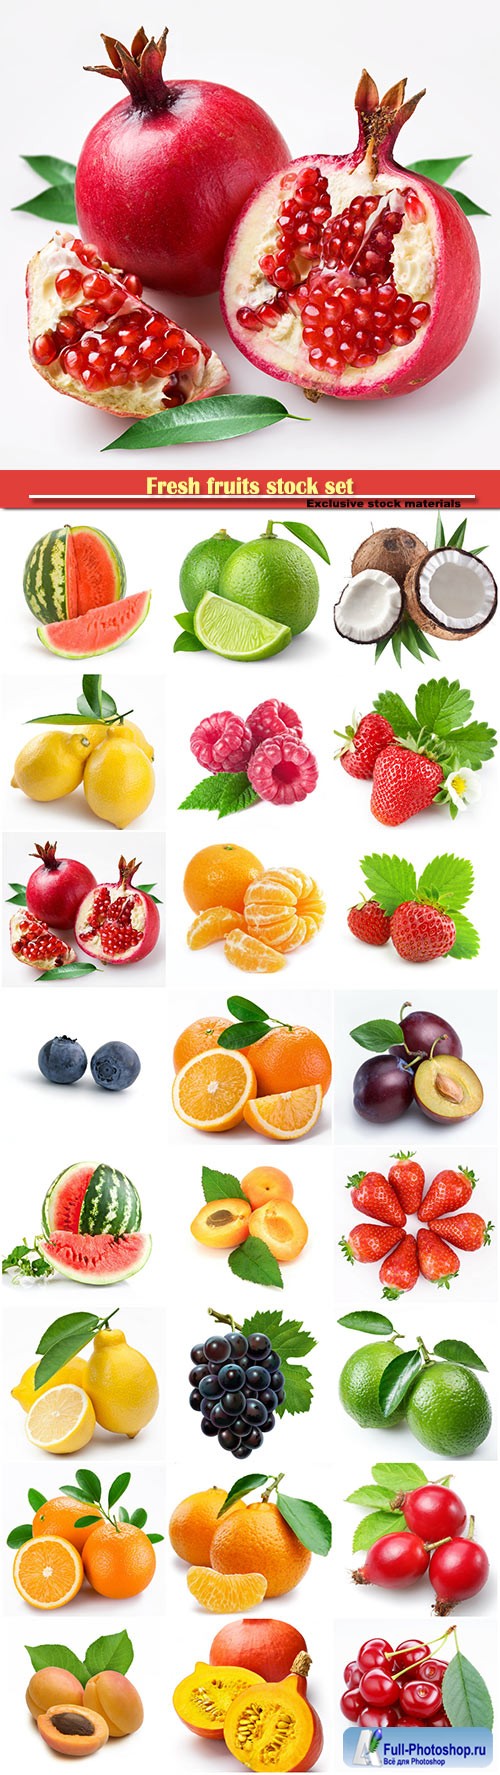 Fresh fruits stock set